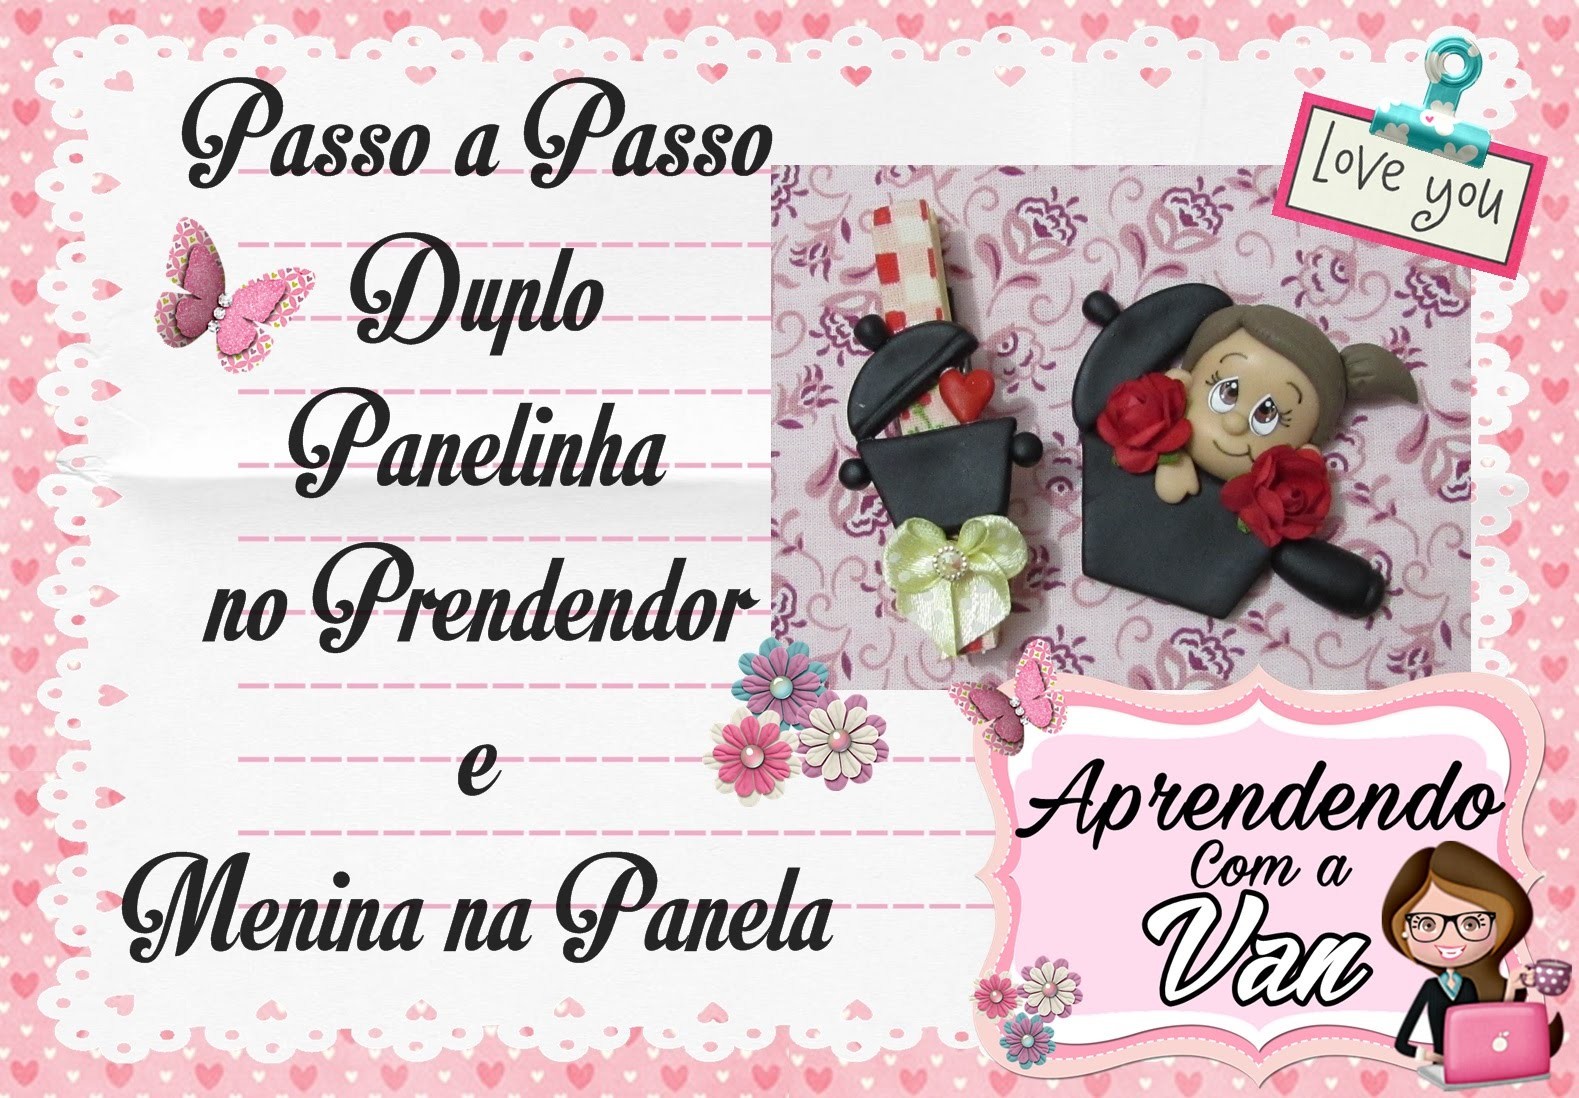 (DIY) PASSO A PASSO DUPLO PANELINHA NO PRENDEDOR E MENINA NA PANELA - Especial Dia das Mães #1